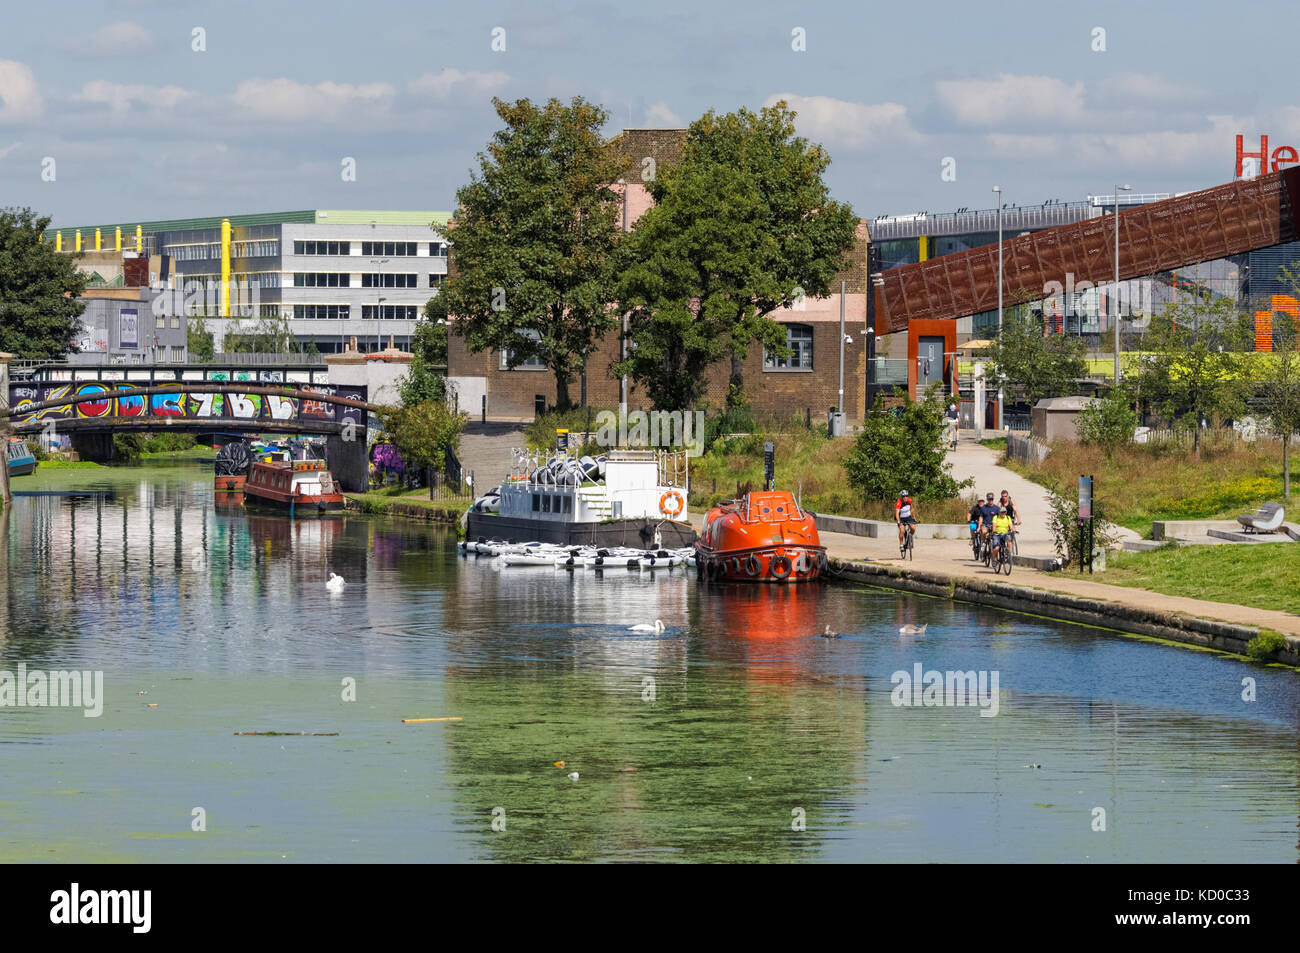 Rivière Lee ou de la rivière Lea Canal de navigation, Hackney, Londres Angleterre Royaume-Uni UK Banque D'Images